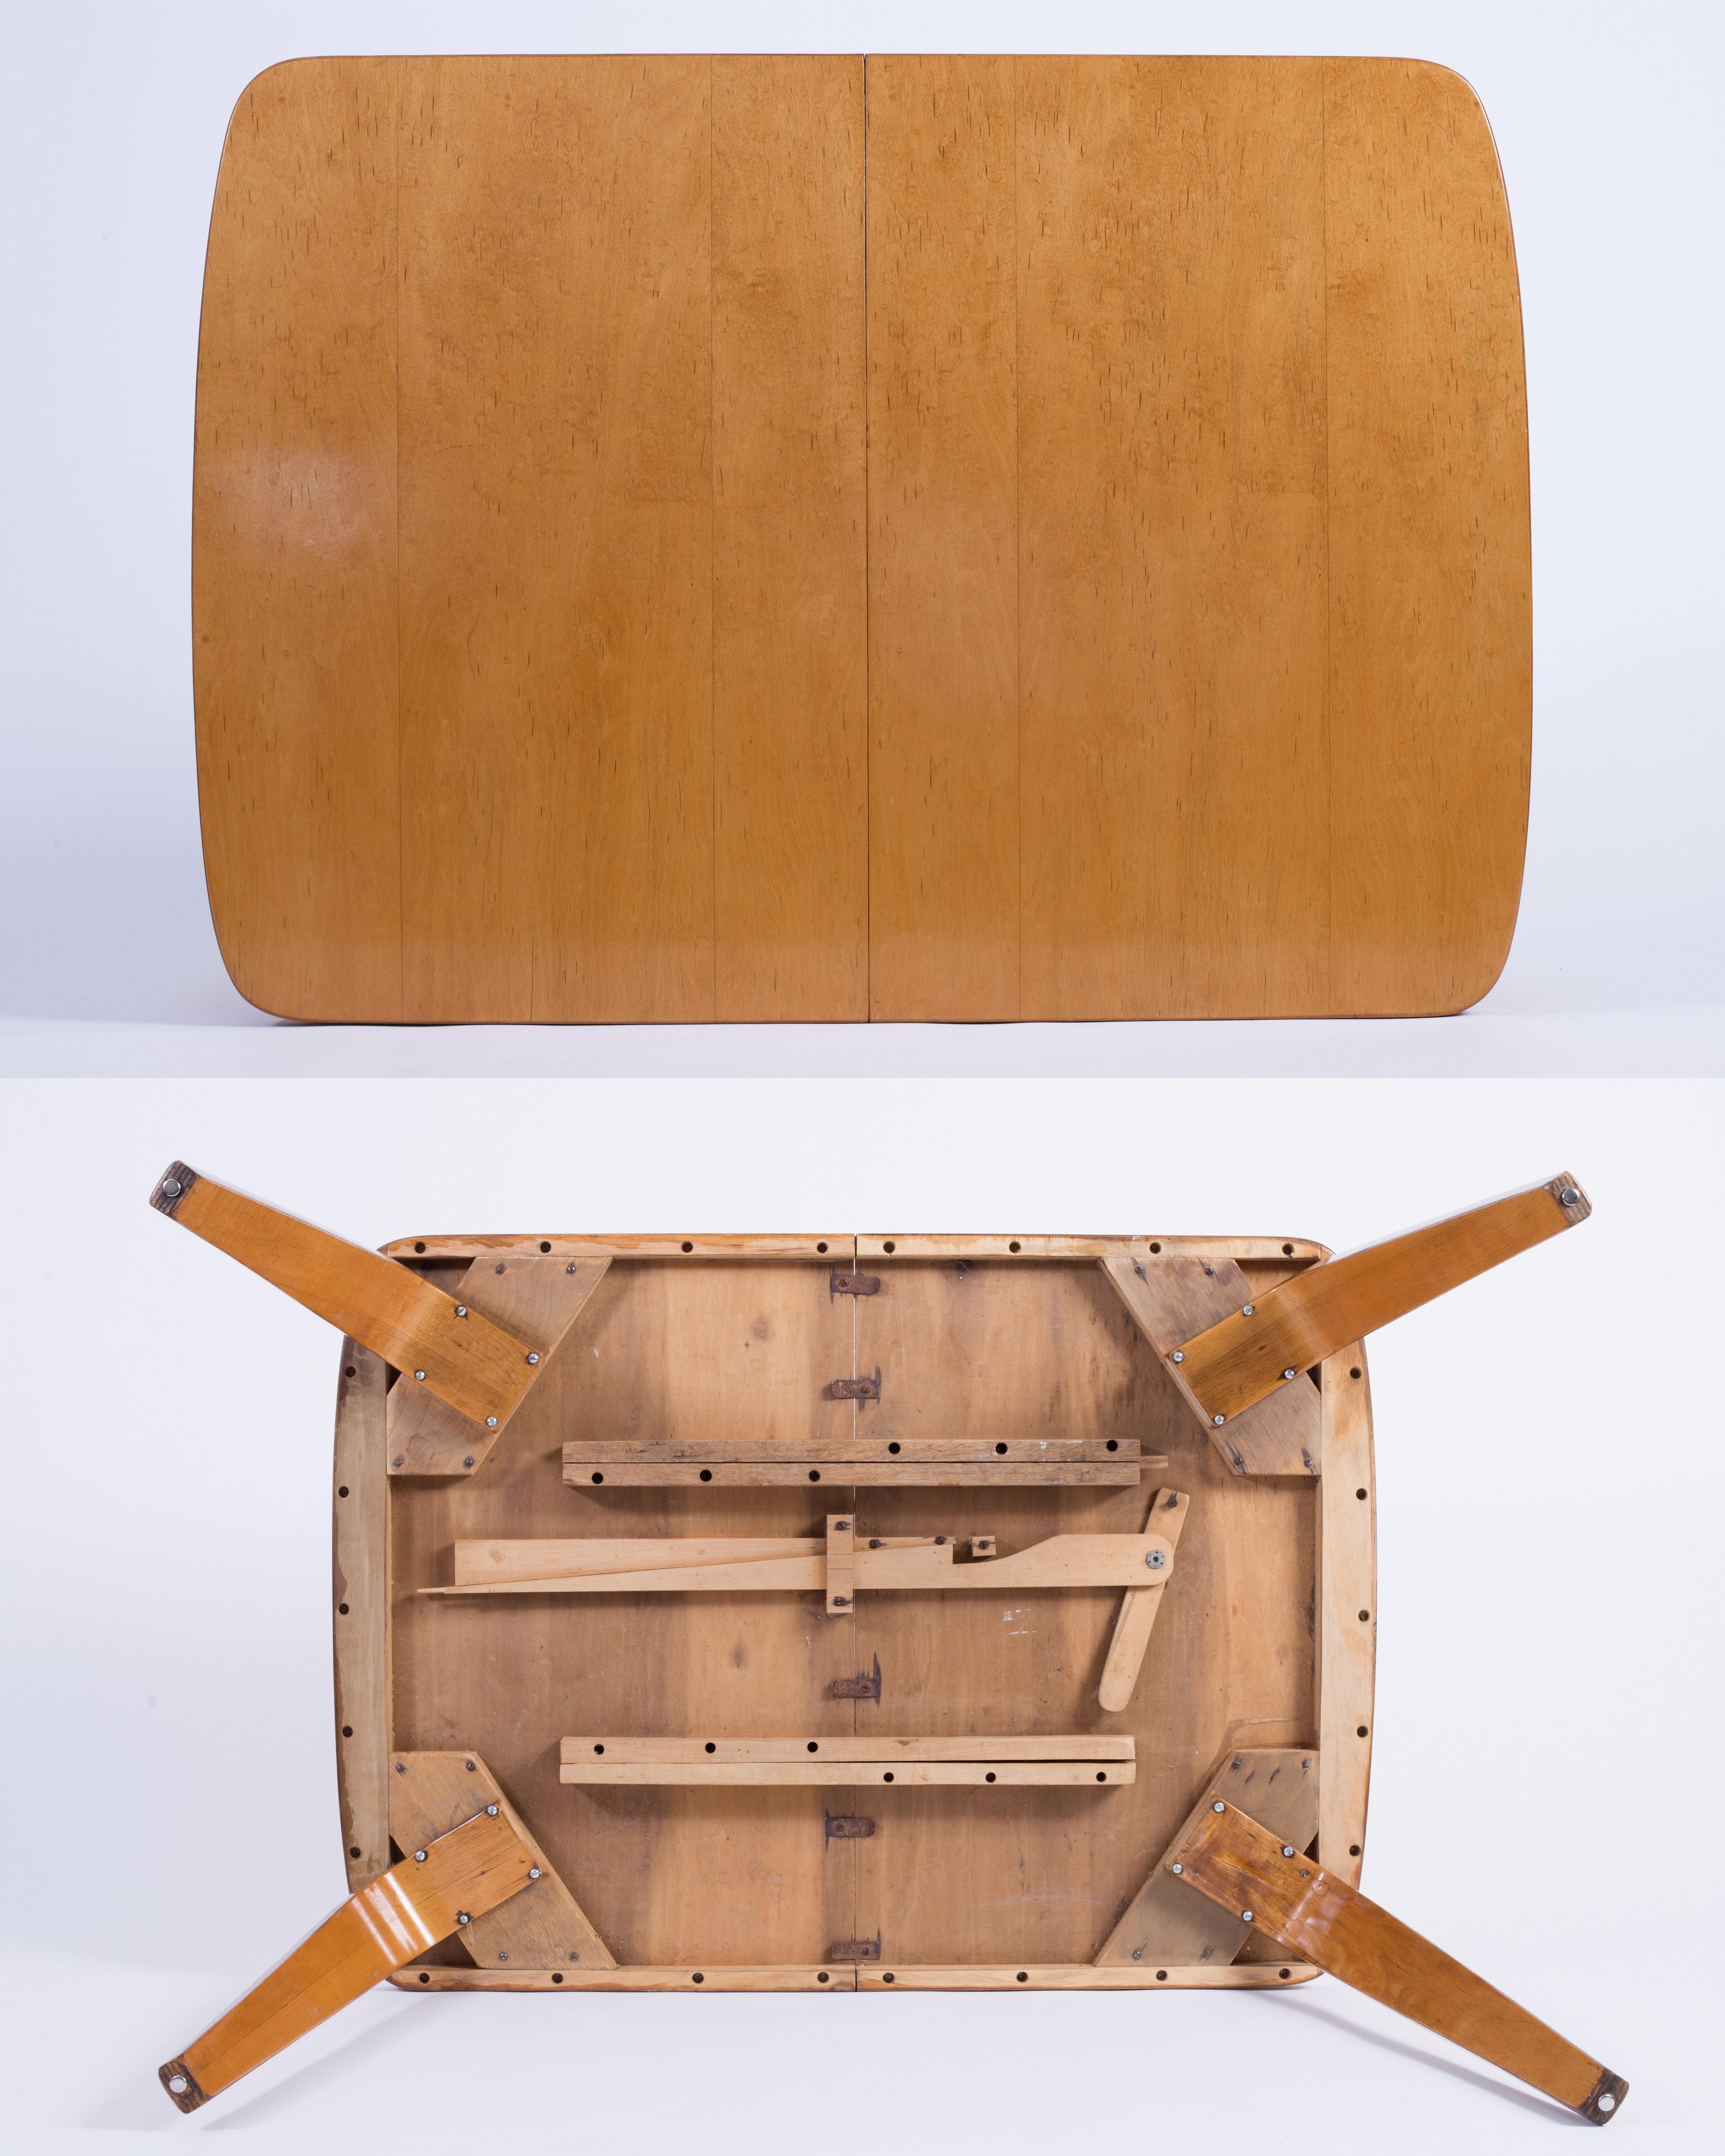 Thaden-Jordan 1940’s Herbert Von Thaden Mid-Century Modern Table/Chairs 5pc Set For Sale 1